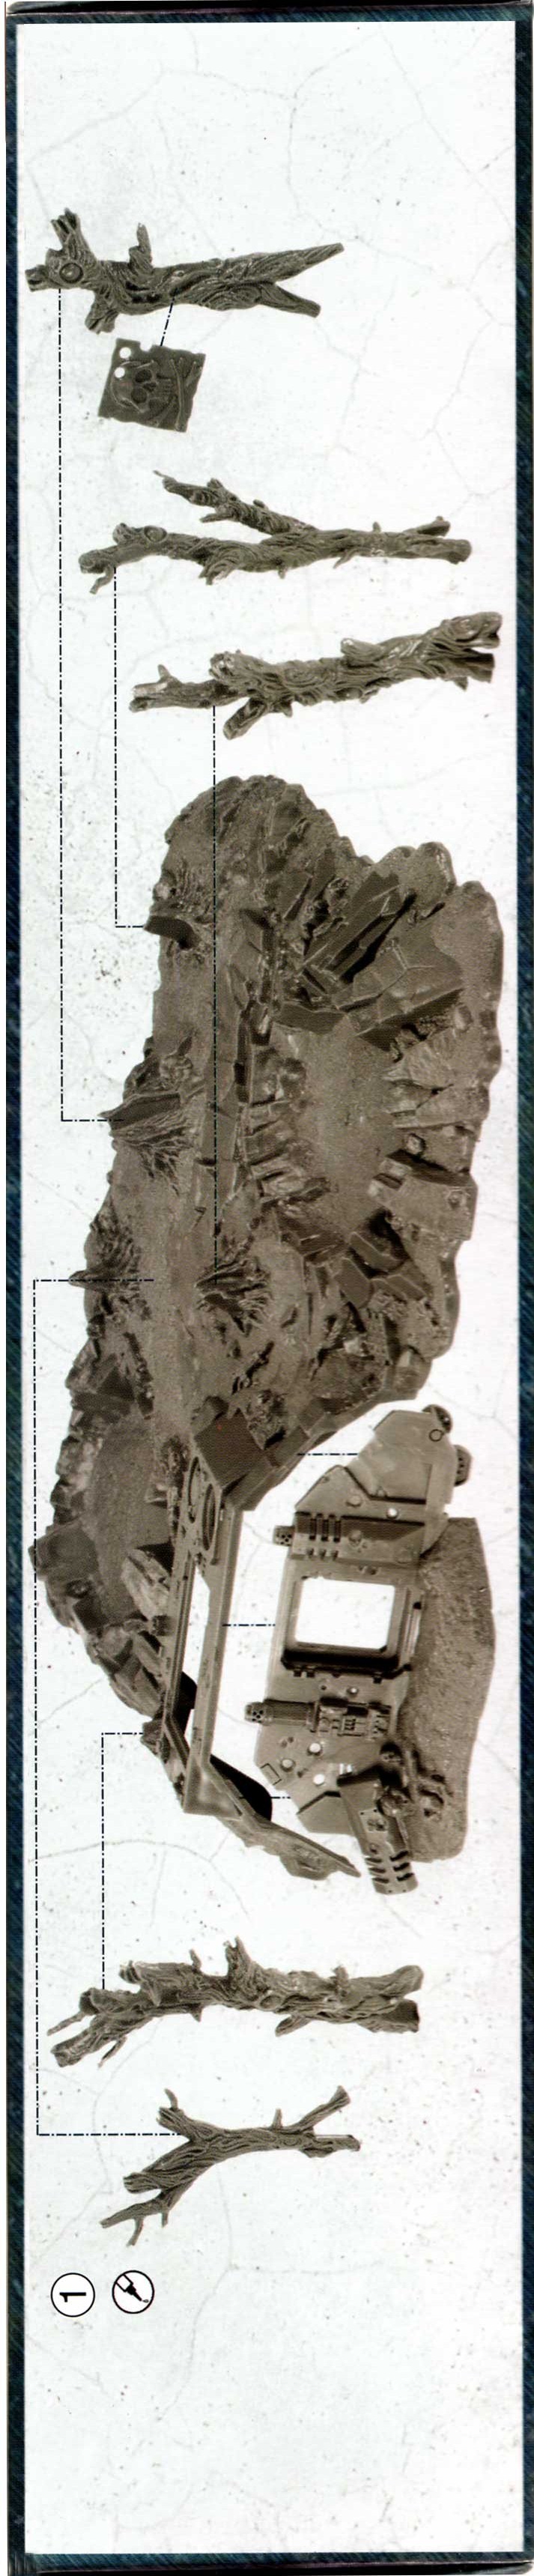 notice de montage de l'épave de Rhino et débris de batailles (décor Warhammer 40.000)